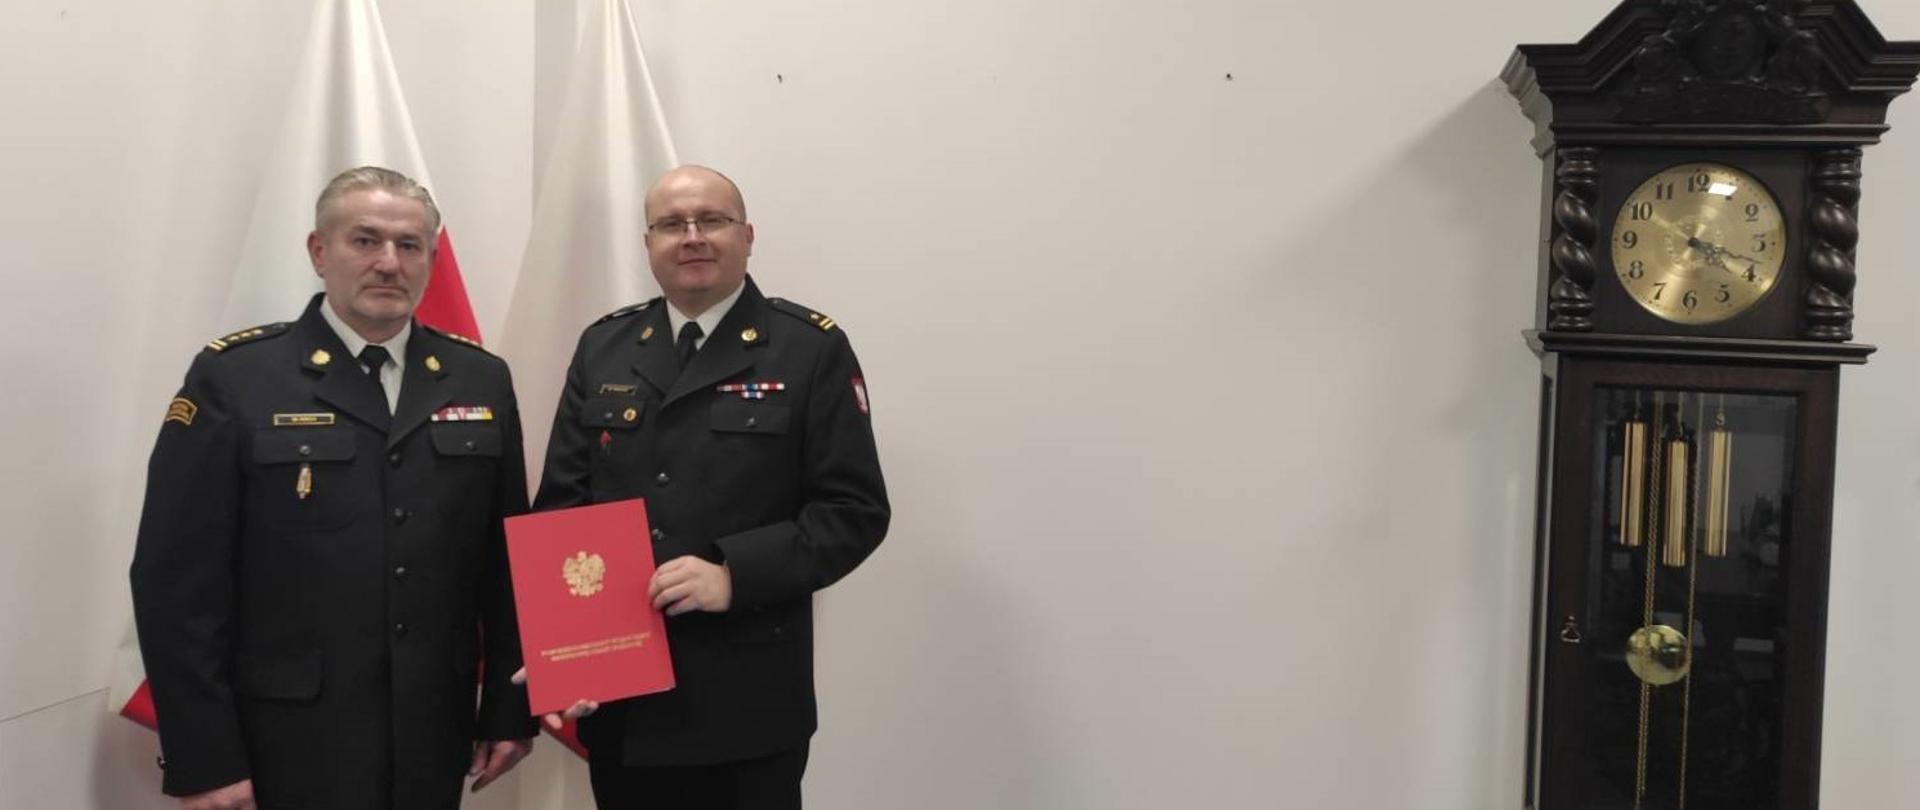 Zdjęcie komendanta wojewódzkiego z komendantem miejskim w Sopocie na tle flag oraz zabytkowego zegara